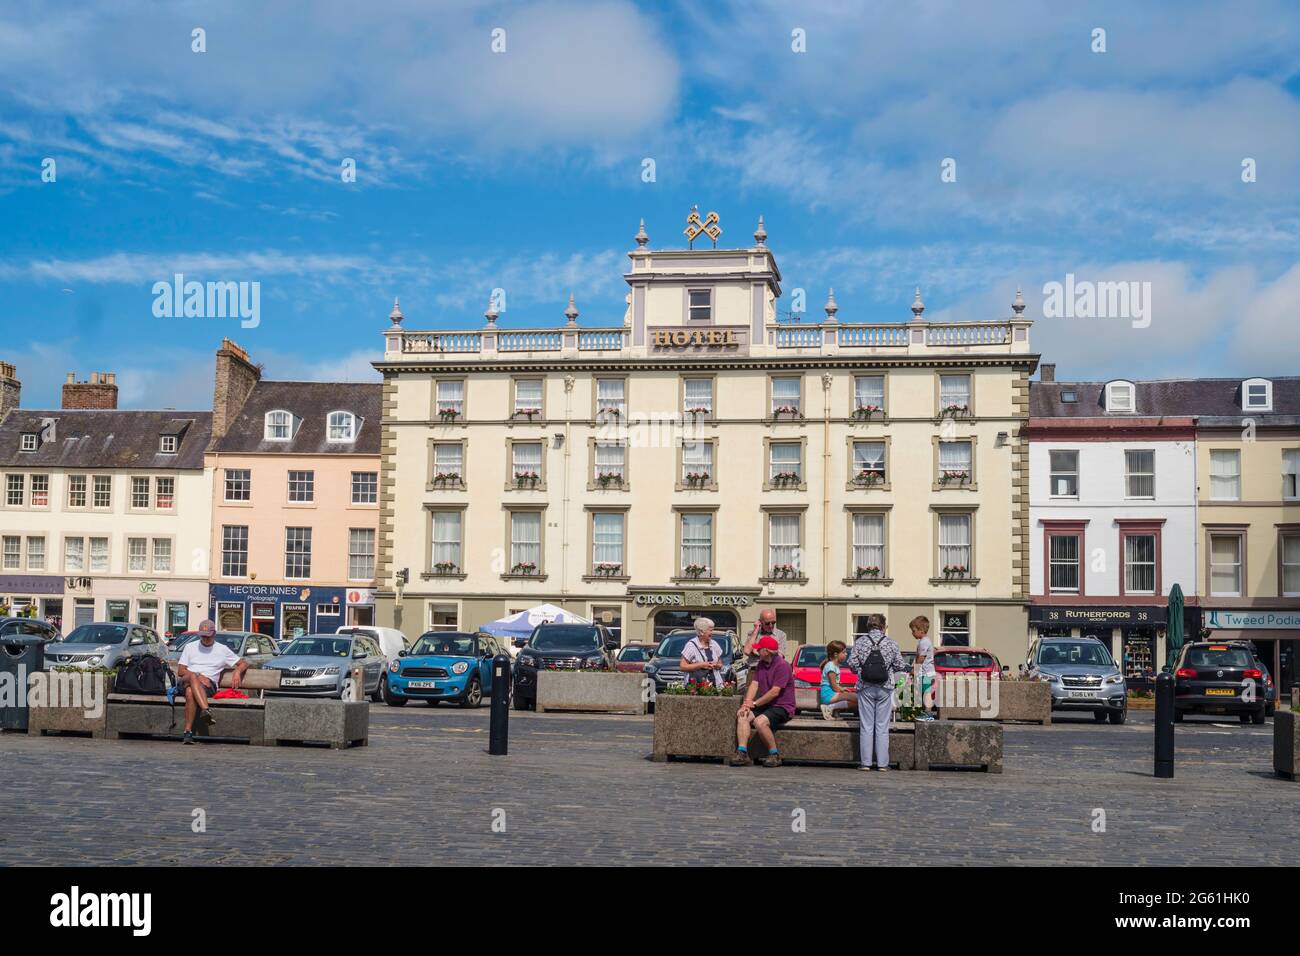 Menschen sitzen auf dem Square in Kelso mit dem Cross Keys Hotel im Hintergrund, Scottish Borders, Schottland, Großbritannien Stockfoto